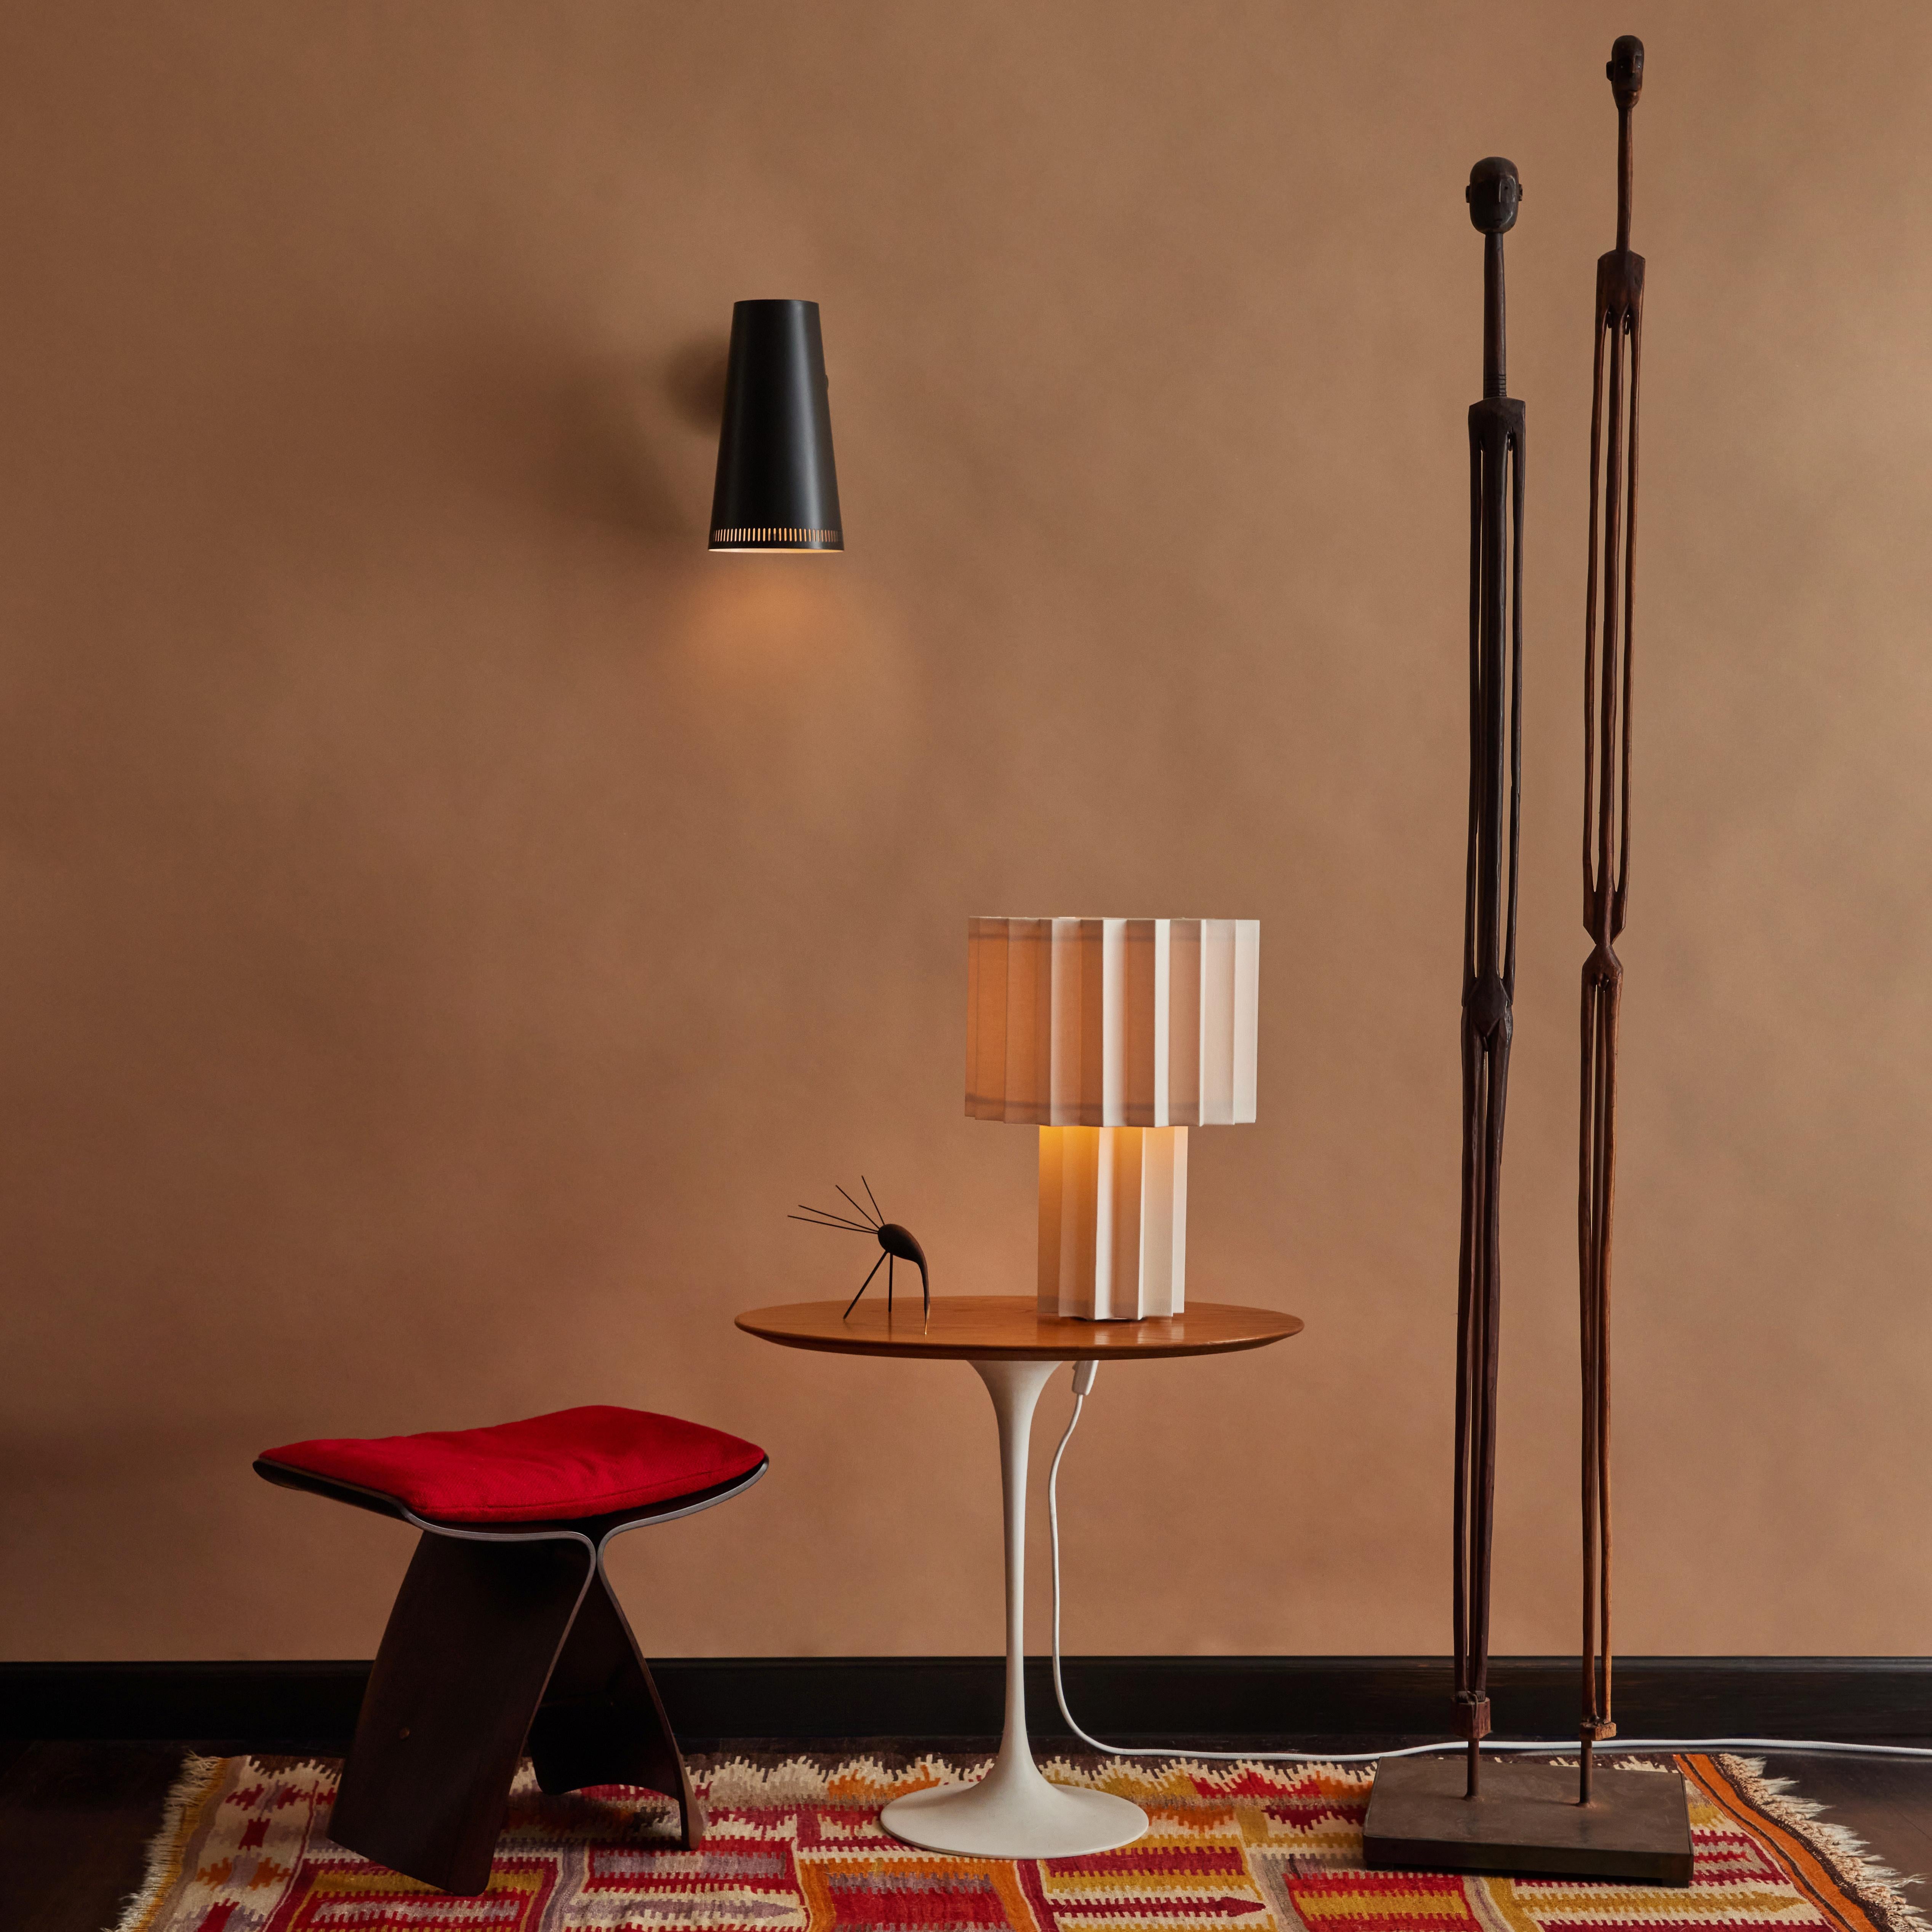 Lampe de table en textile plissé 'Plissé White Edition' par Folkform pour Örsjö.

Cette lampe de table unique a reçu le prix 